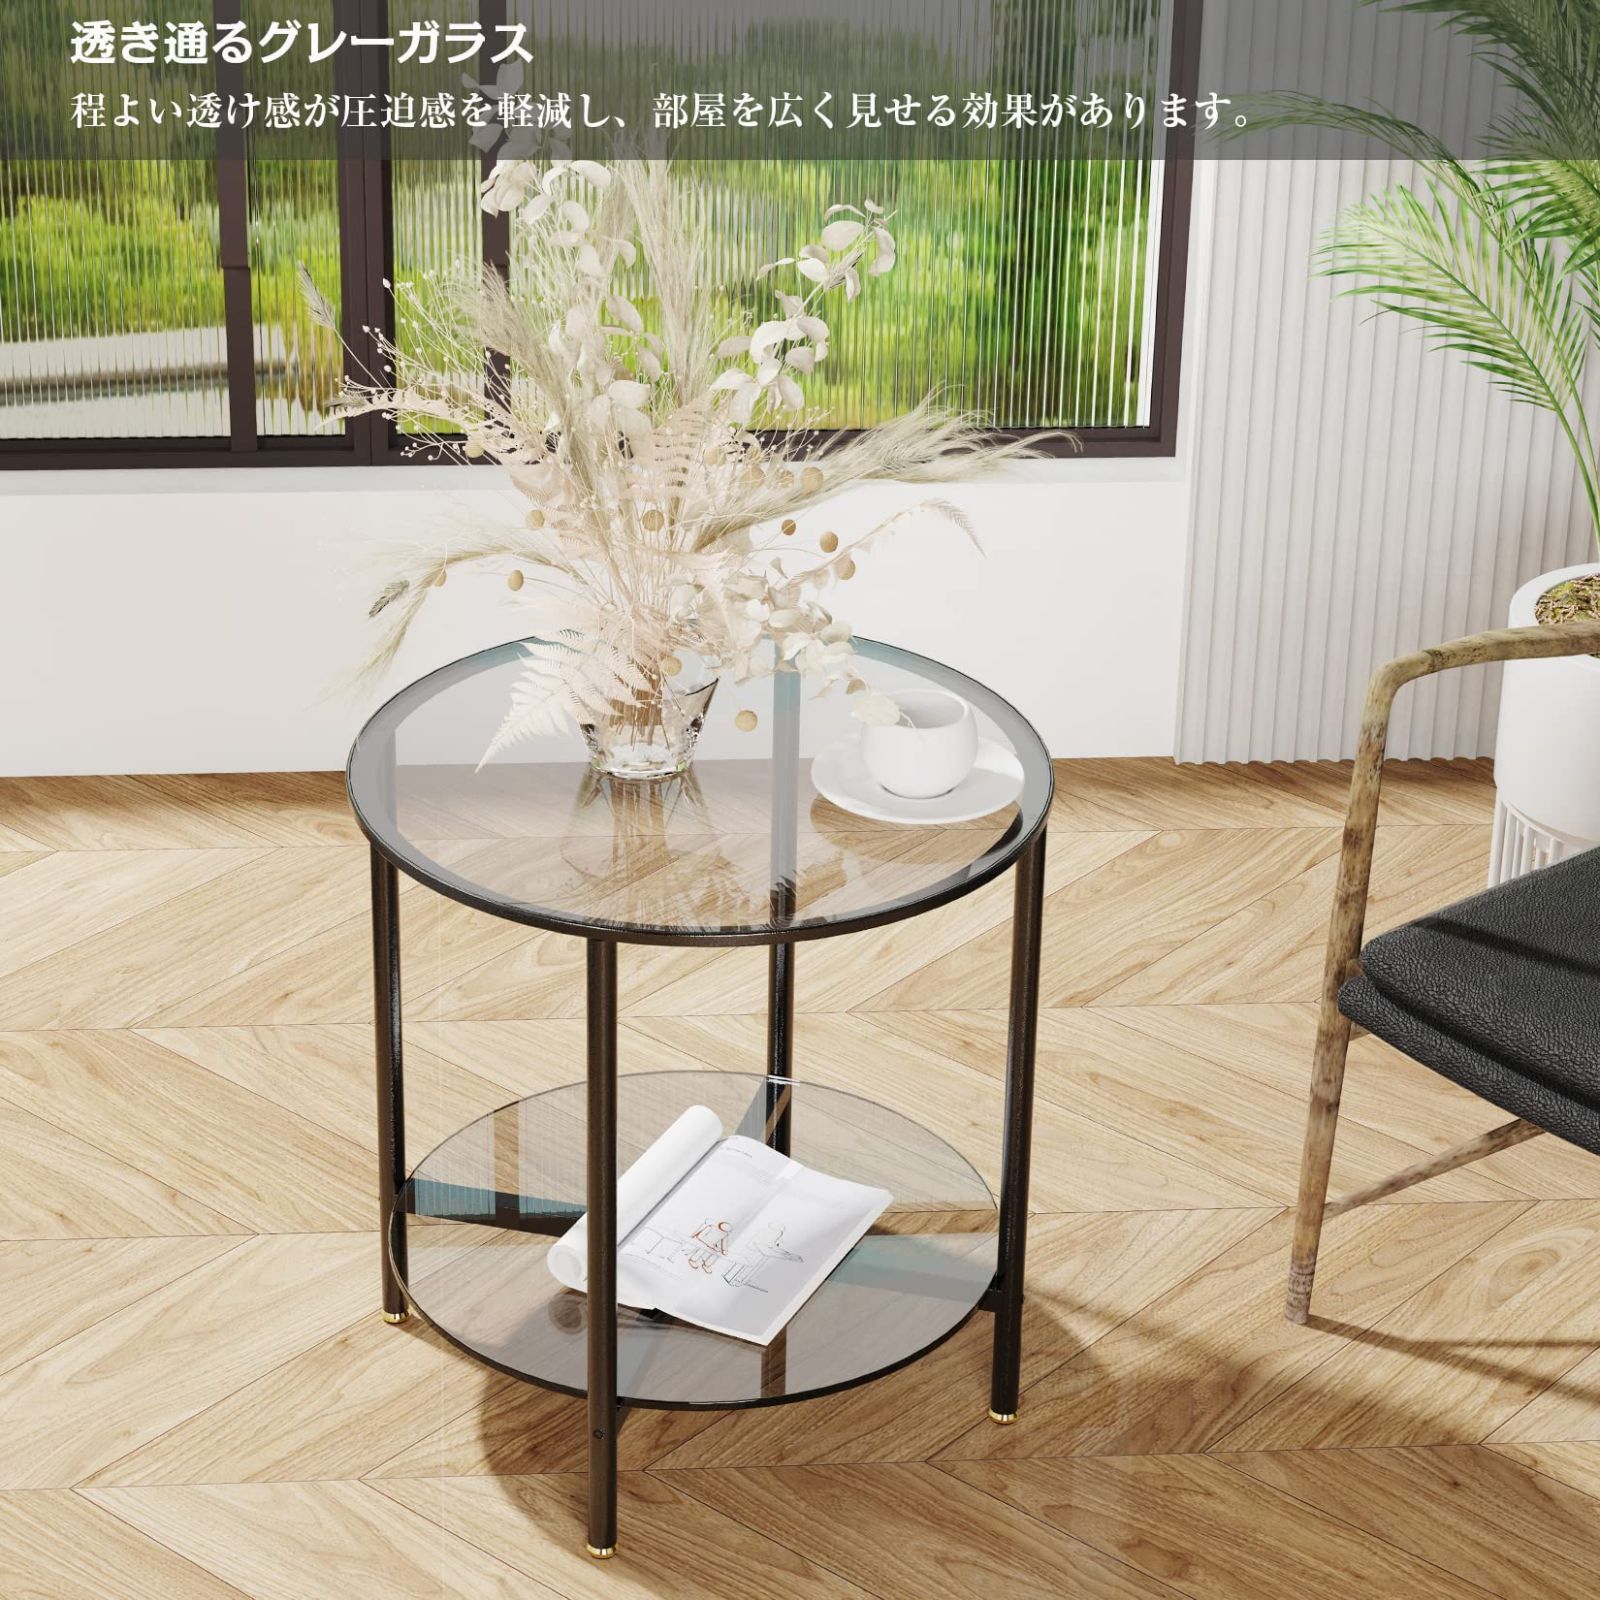 Artloge 強化ガラスエンドテーブル ミニテーブル コーヒーテーブル 丸型K4-1No281